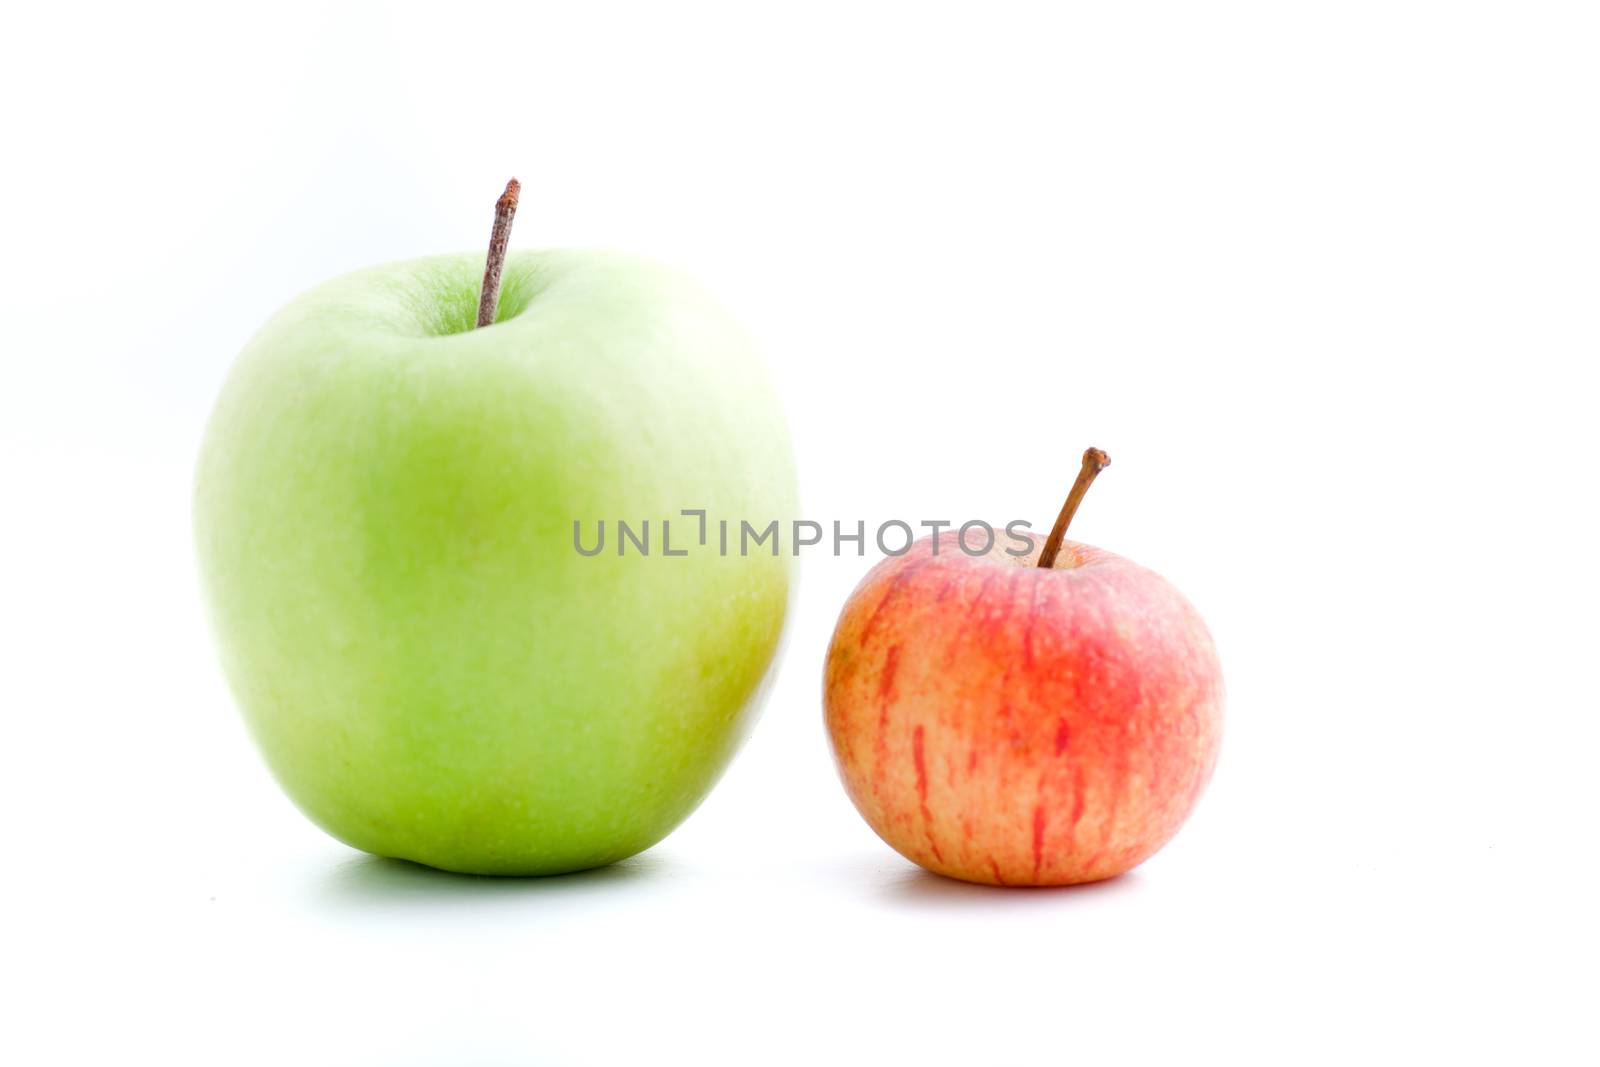 Apple varieties by Farina6000